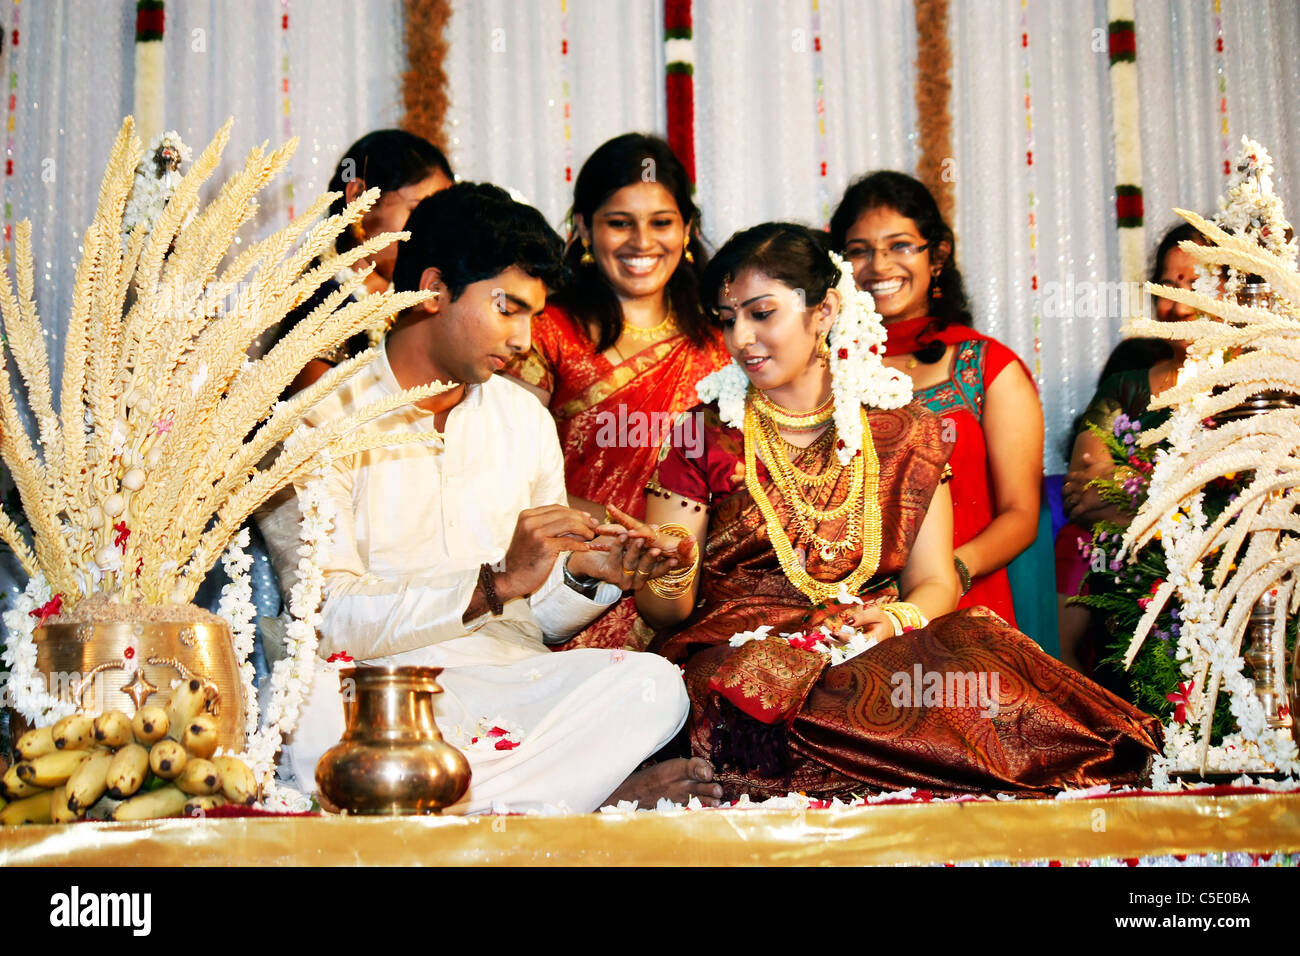 Un Ritratto Dettagliato del groom collocando un anello di nozze su la sposa del dito durante il loro matrimonio induista rituale Foto Stock